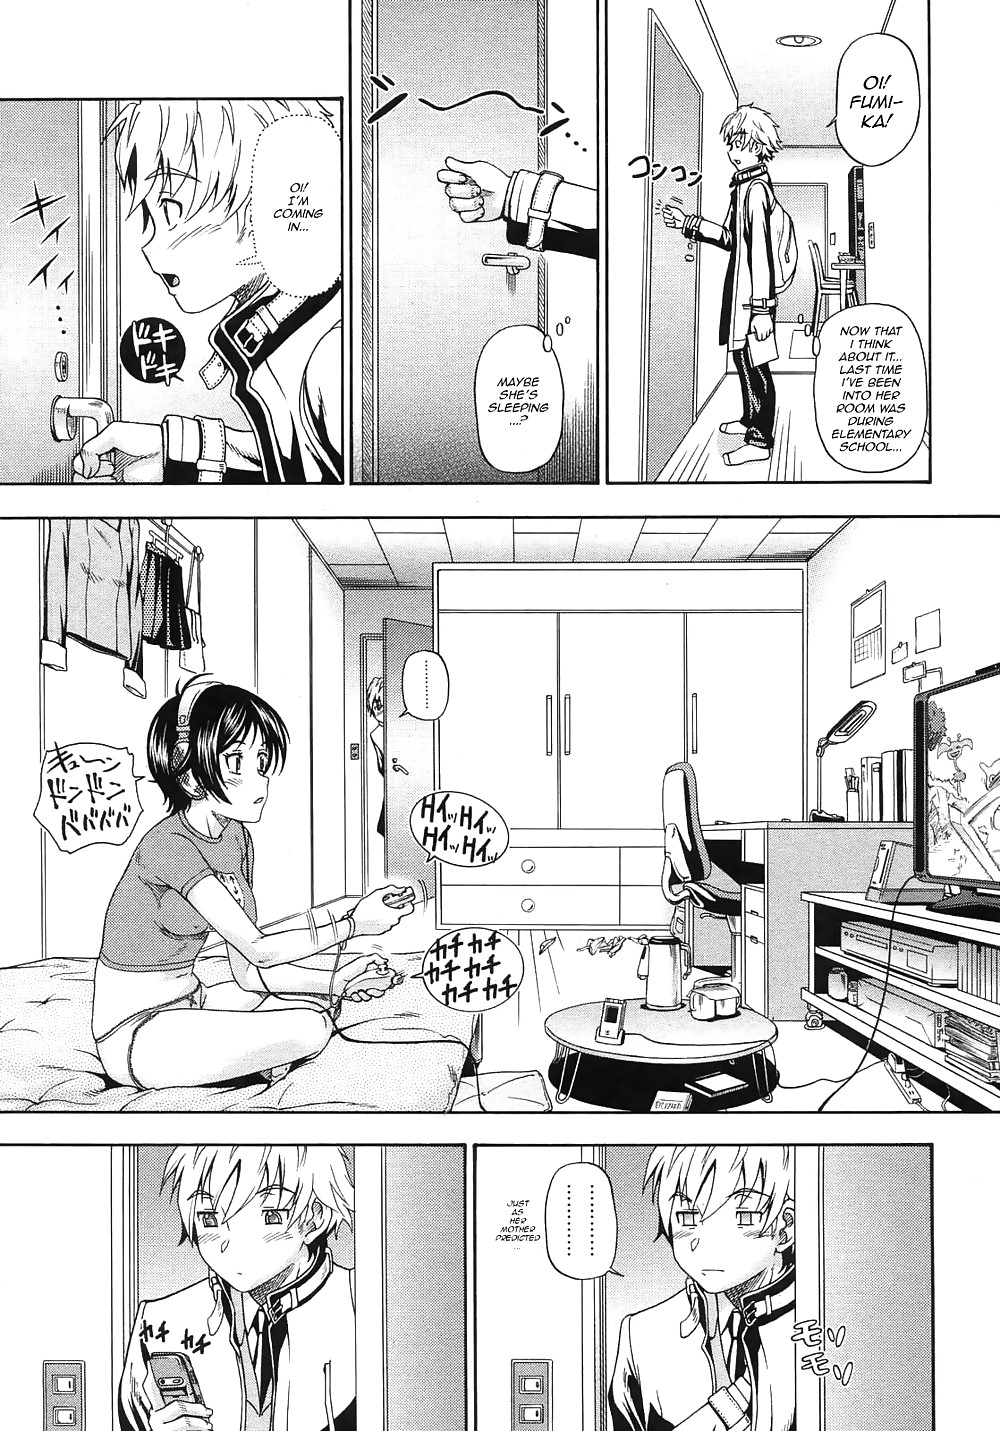 (fumetto hentai) fukudada opere erotiche #1
 #21011646